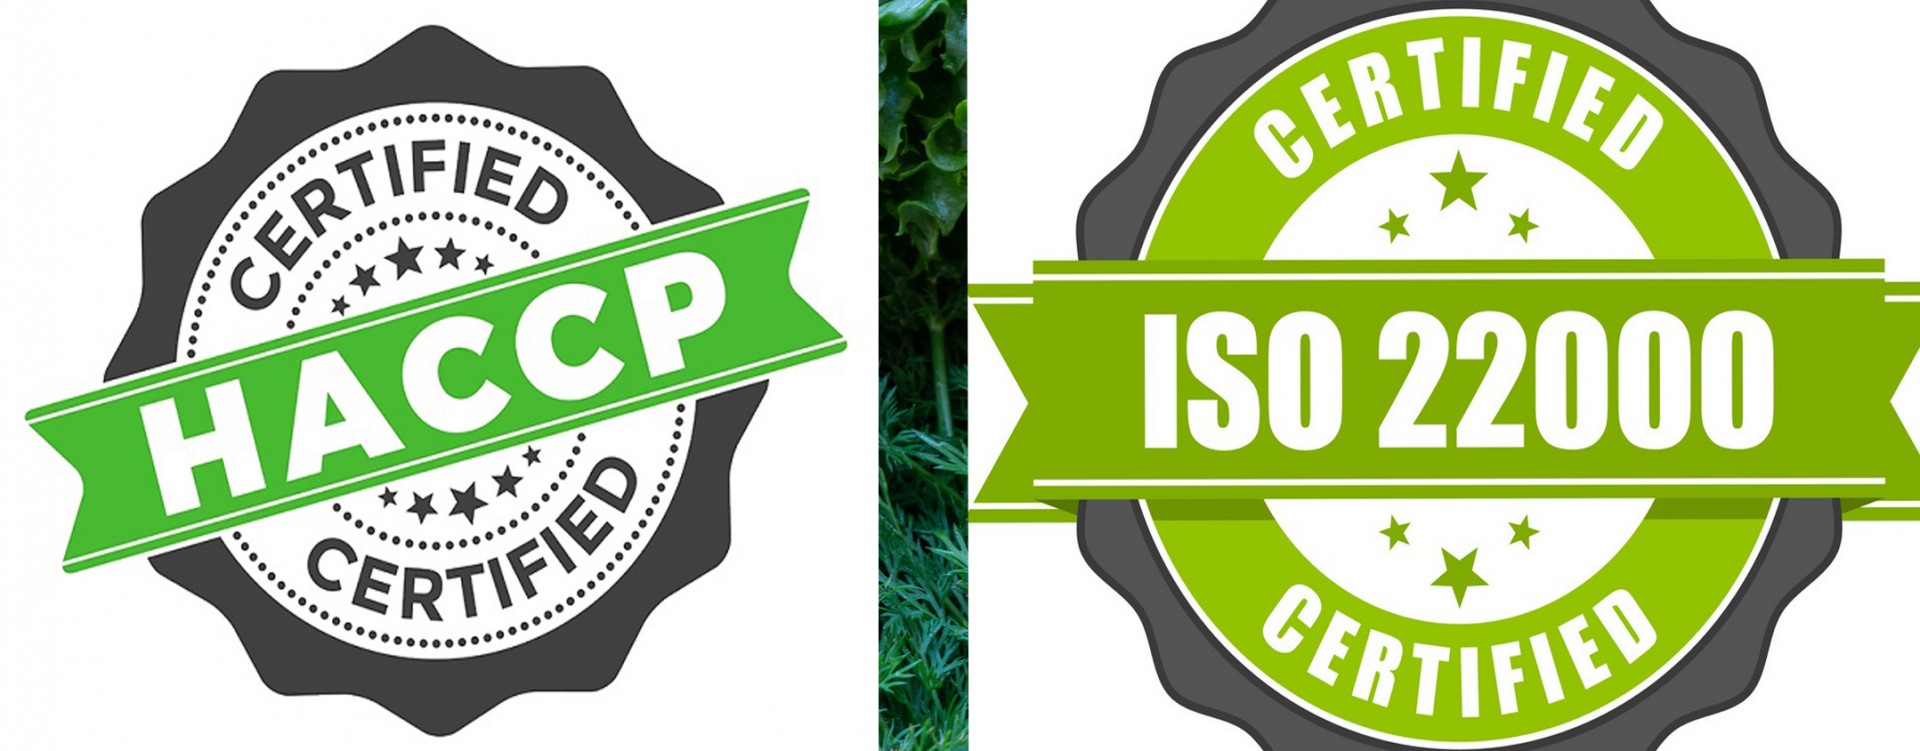 DOANH NGHIỆP NÊN ÁP DỤNG ISO 22000 HAY HACCP